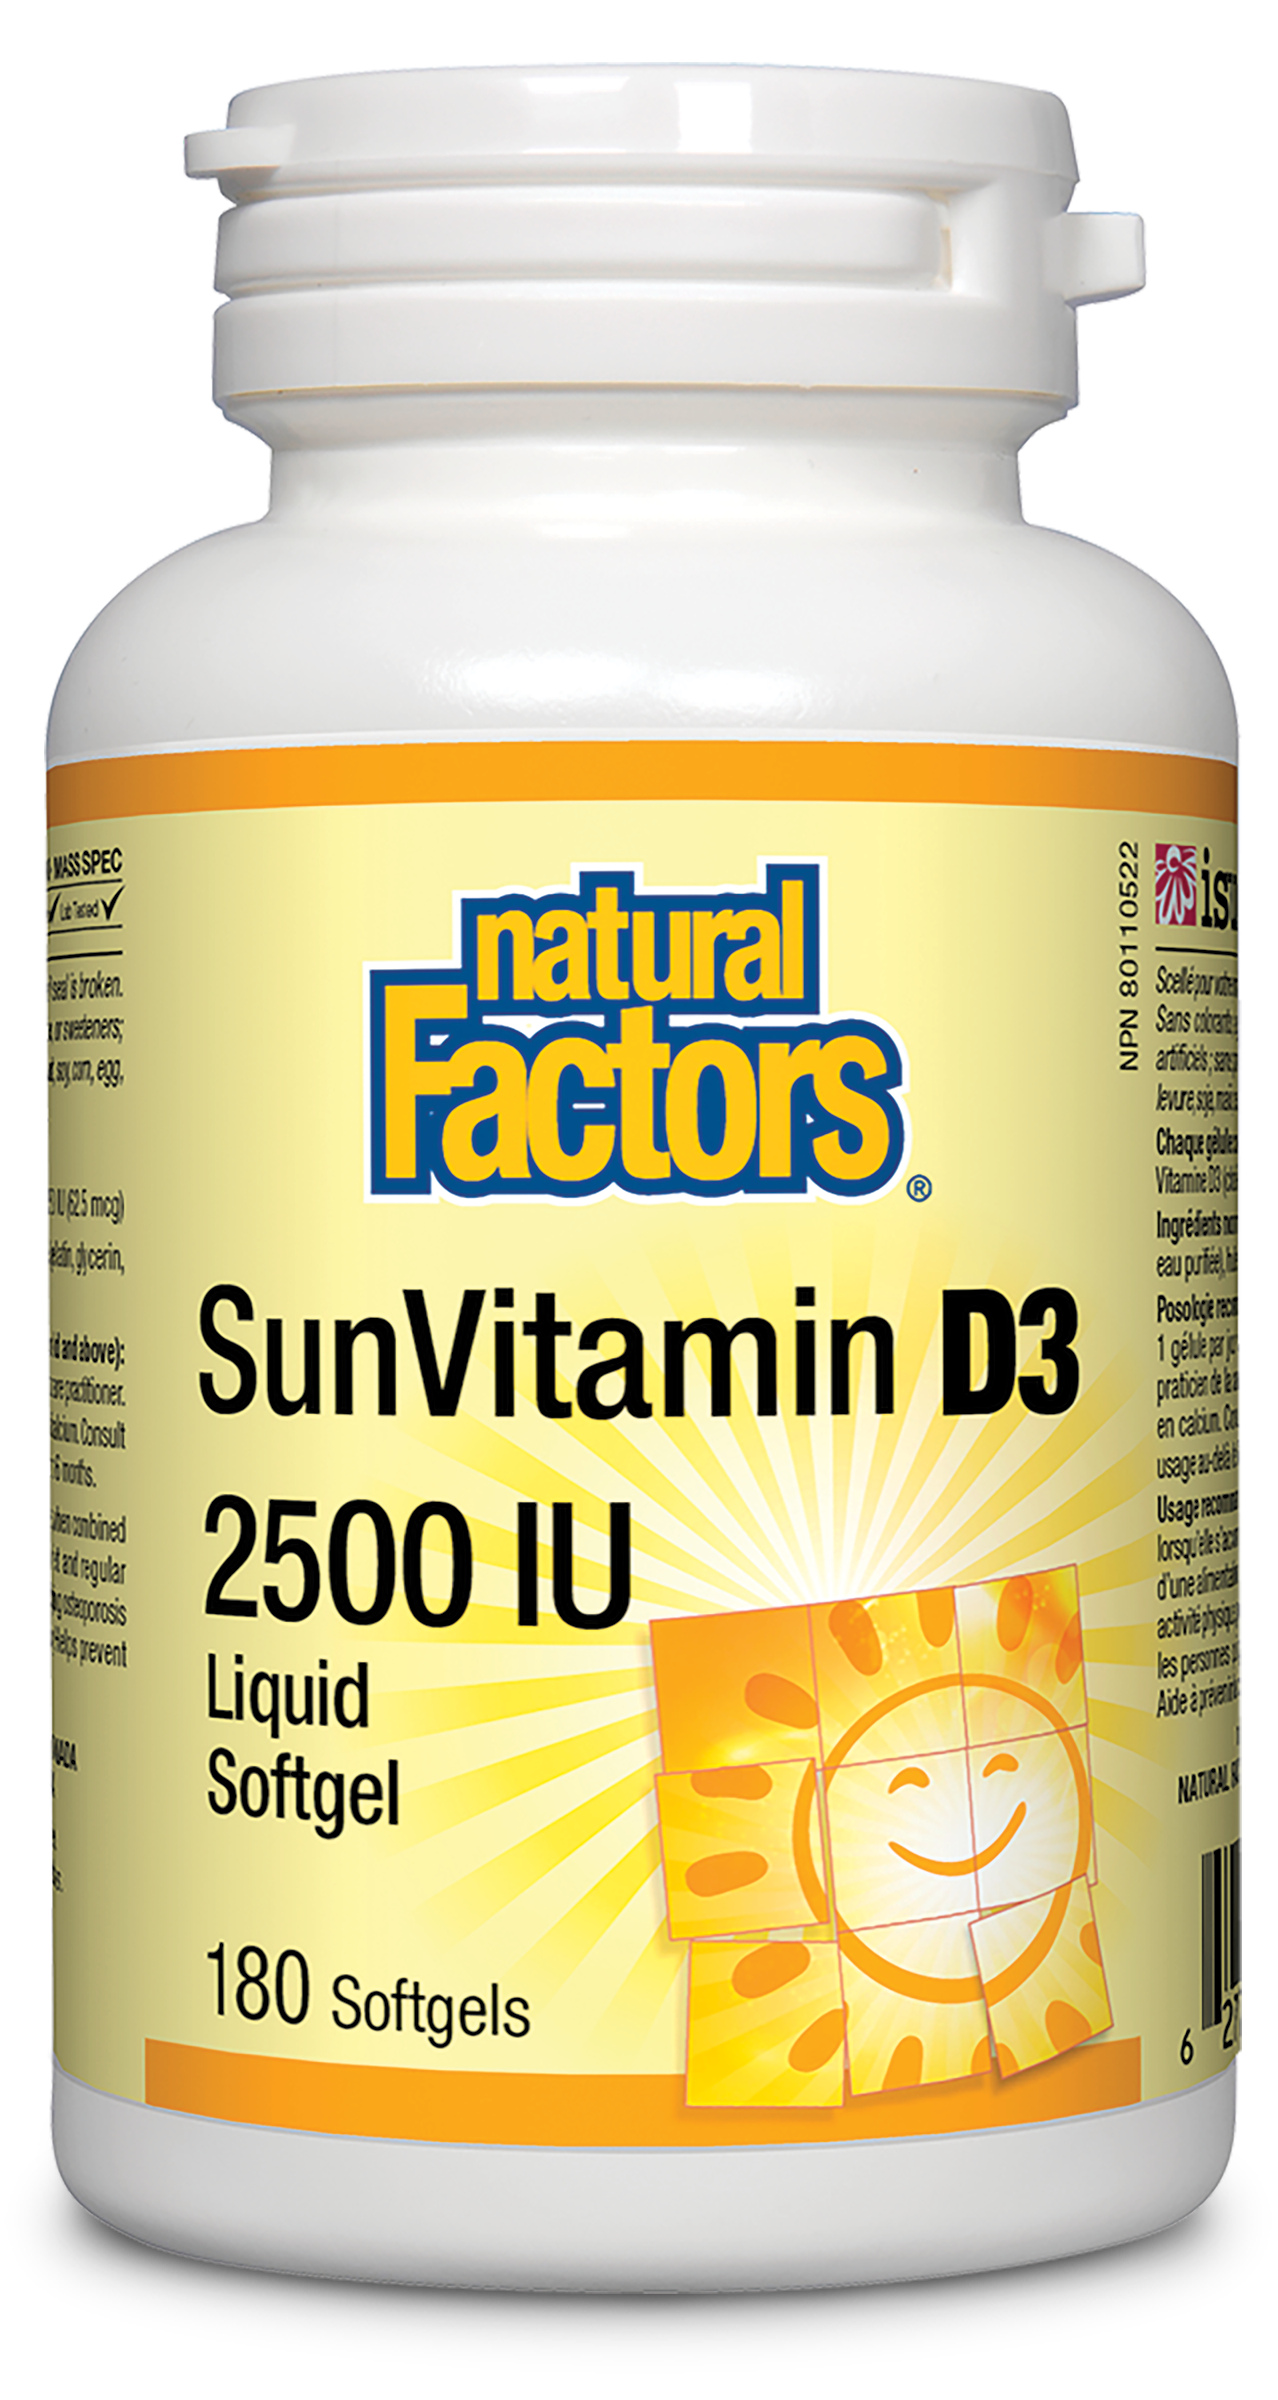 Natural Factors SunVitamin D3 2500IU 180 Softgels